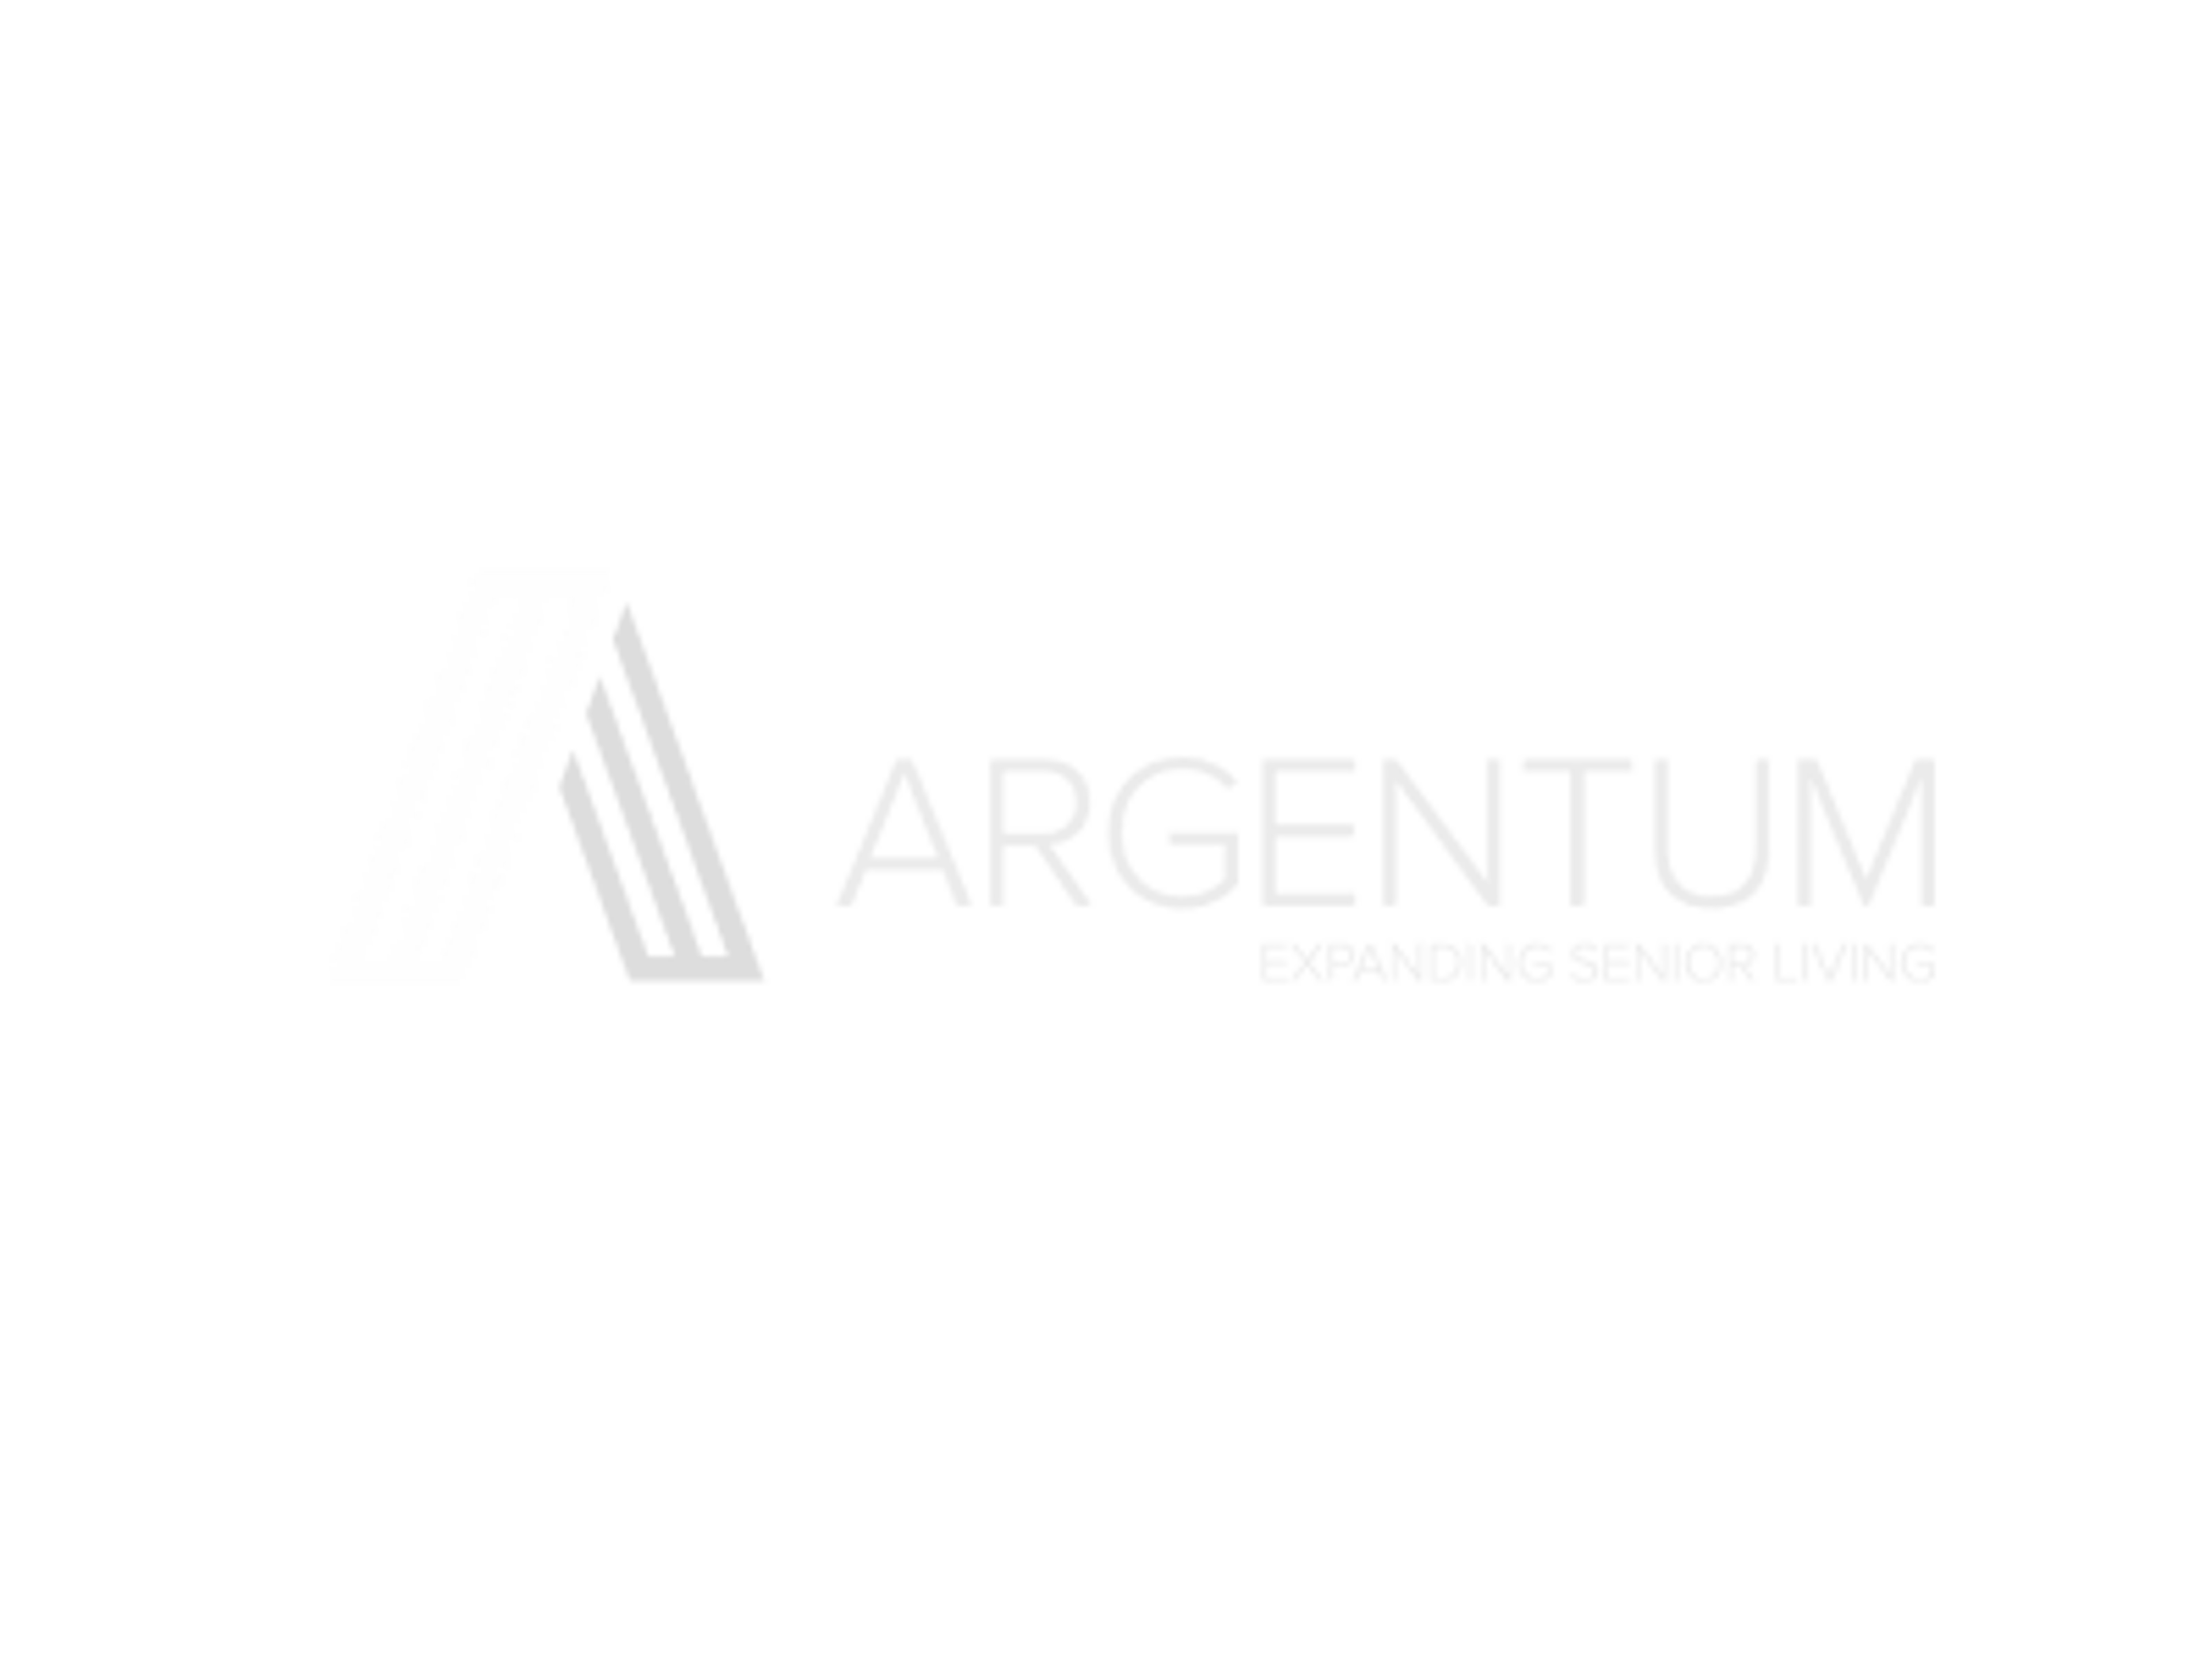 ARGENTUM